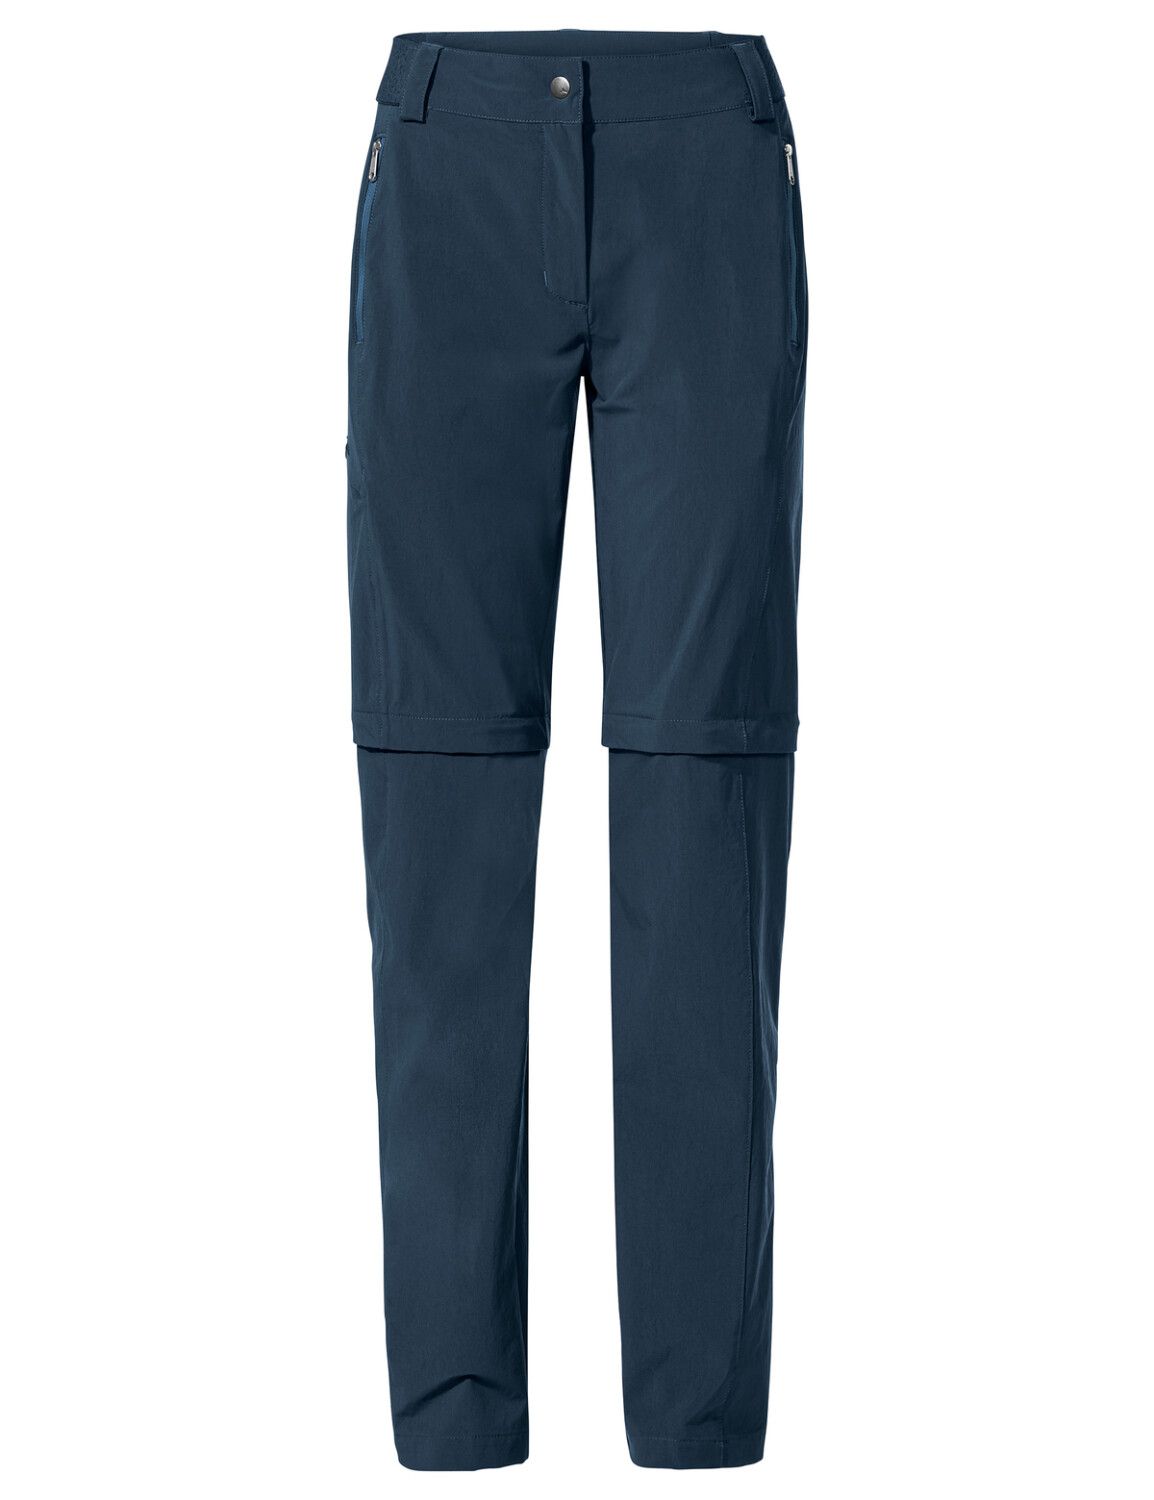 VAUDE Women's Farley Stretch ZO T-Zip Pants II (Bild 13)